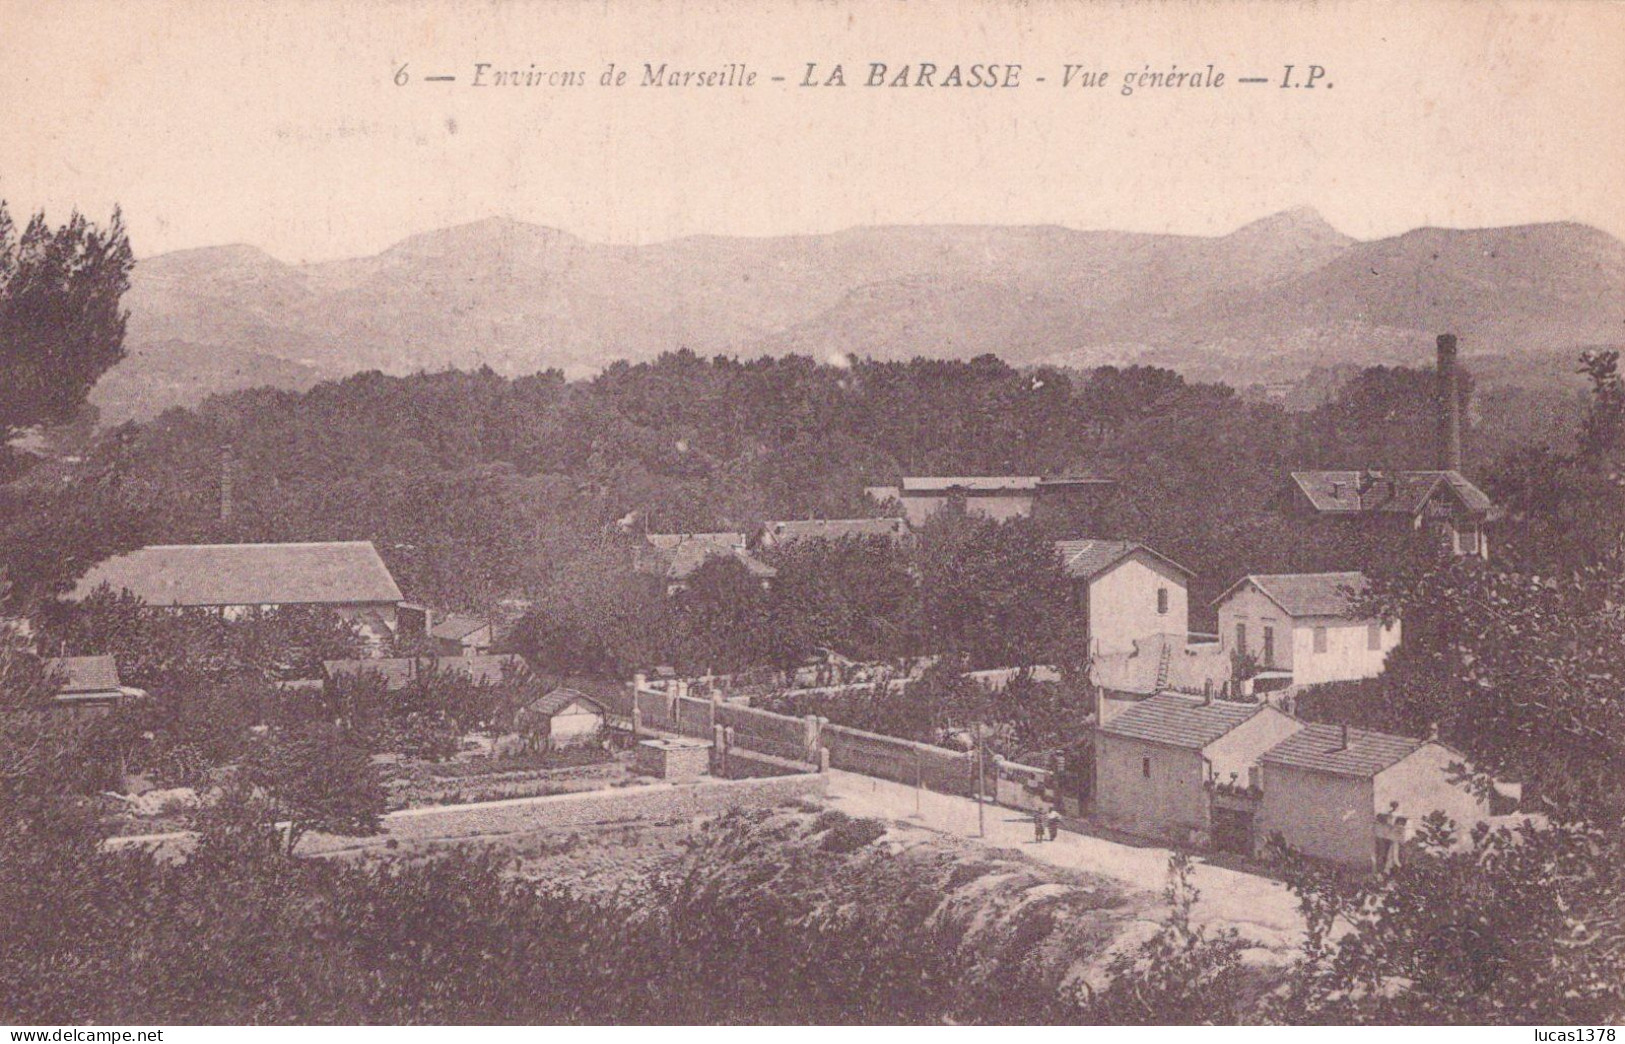 13 / MARSEILLE / LA BARASSE / VUE GENERALE  / IP 6 - Saint Marcel, La Barasse, St Menet